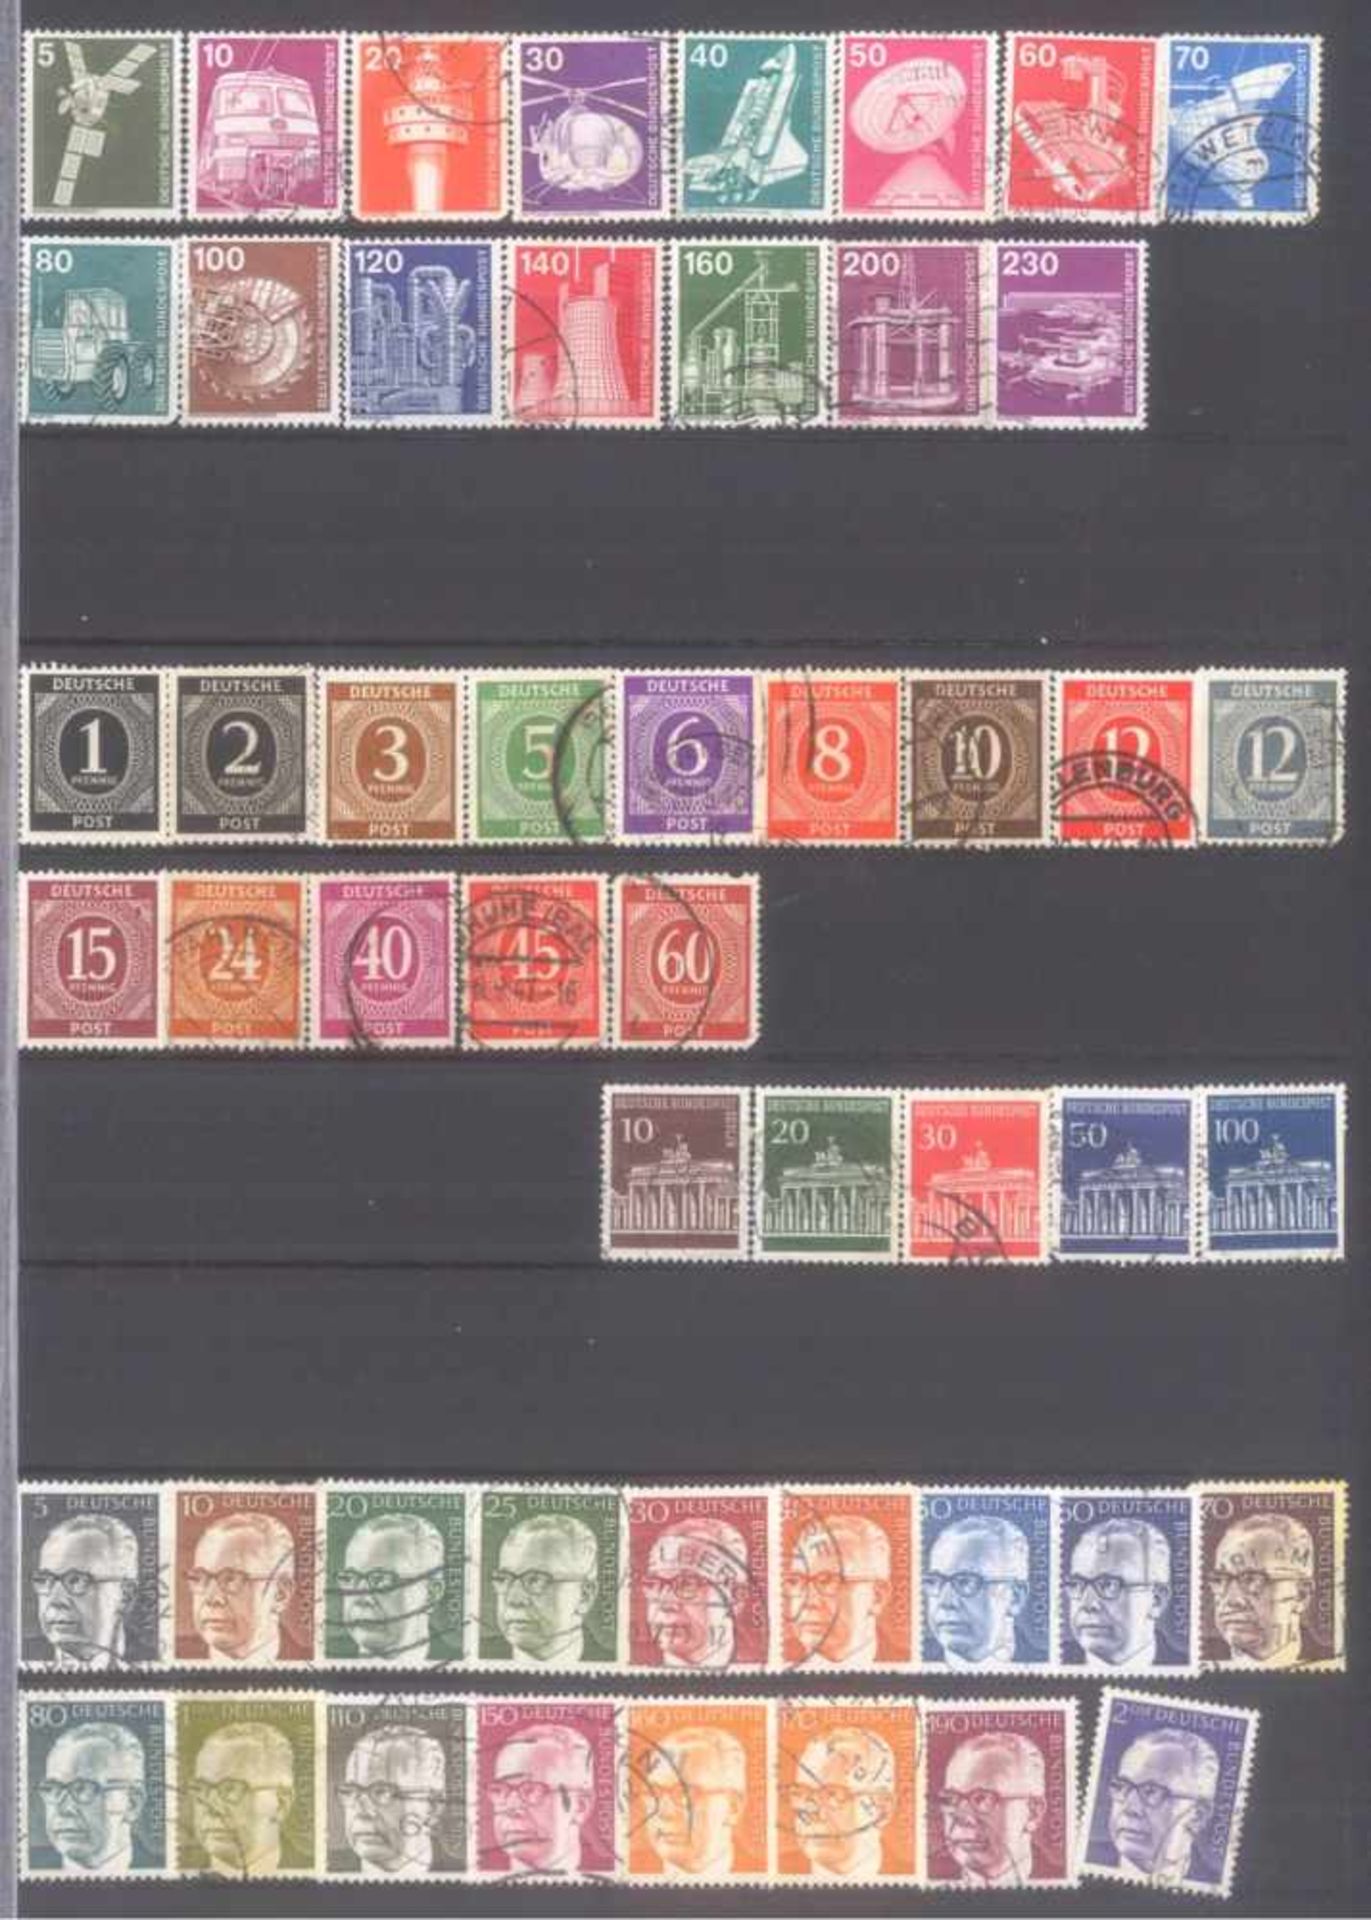 Kleiner Briefmarkennachlass Alle WeltIn 5 Steckalben, gestempelte Marken der BRD, Berlin, etwas - Image 7 of 12